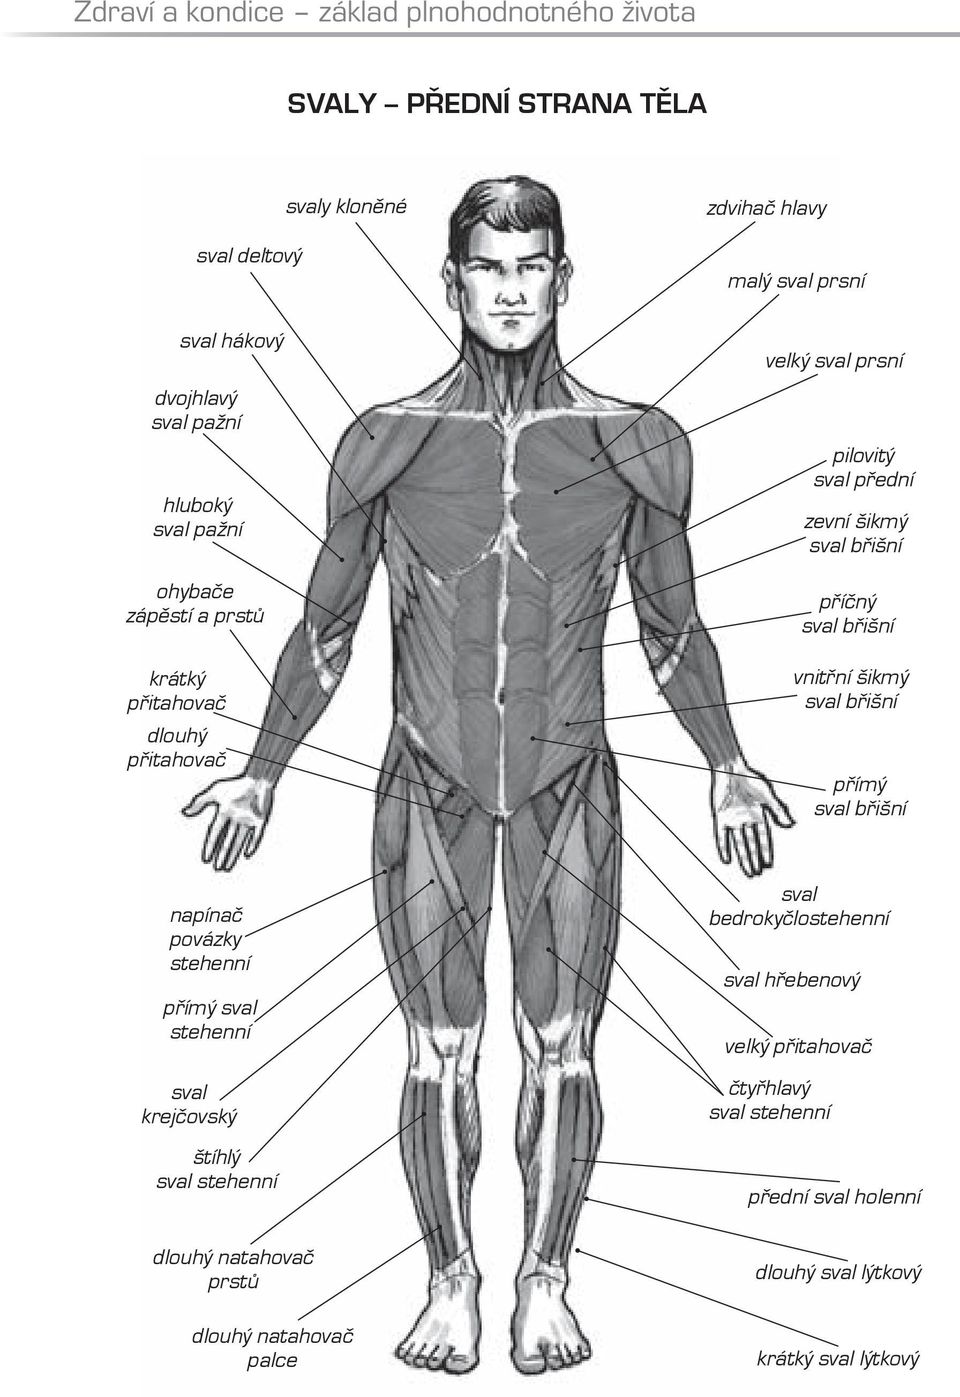 sval břišní vnitřní šikmý sval břišní přímý sval břišní napínač povázky stehenní přímý sval stehenní sval krejčovský štíhlý sval stehenní sval